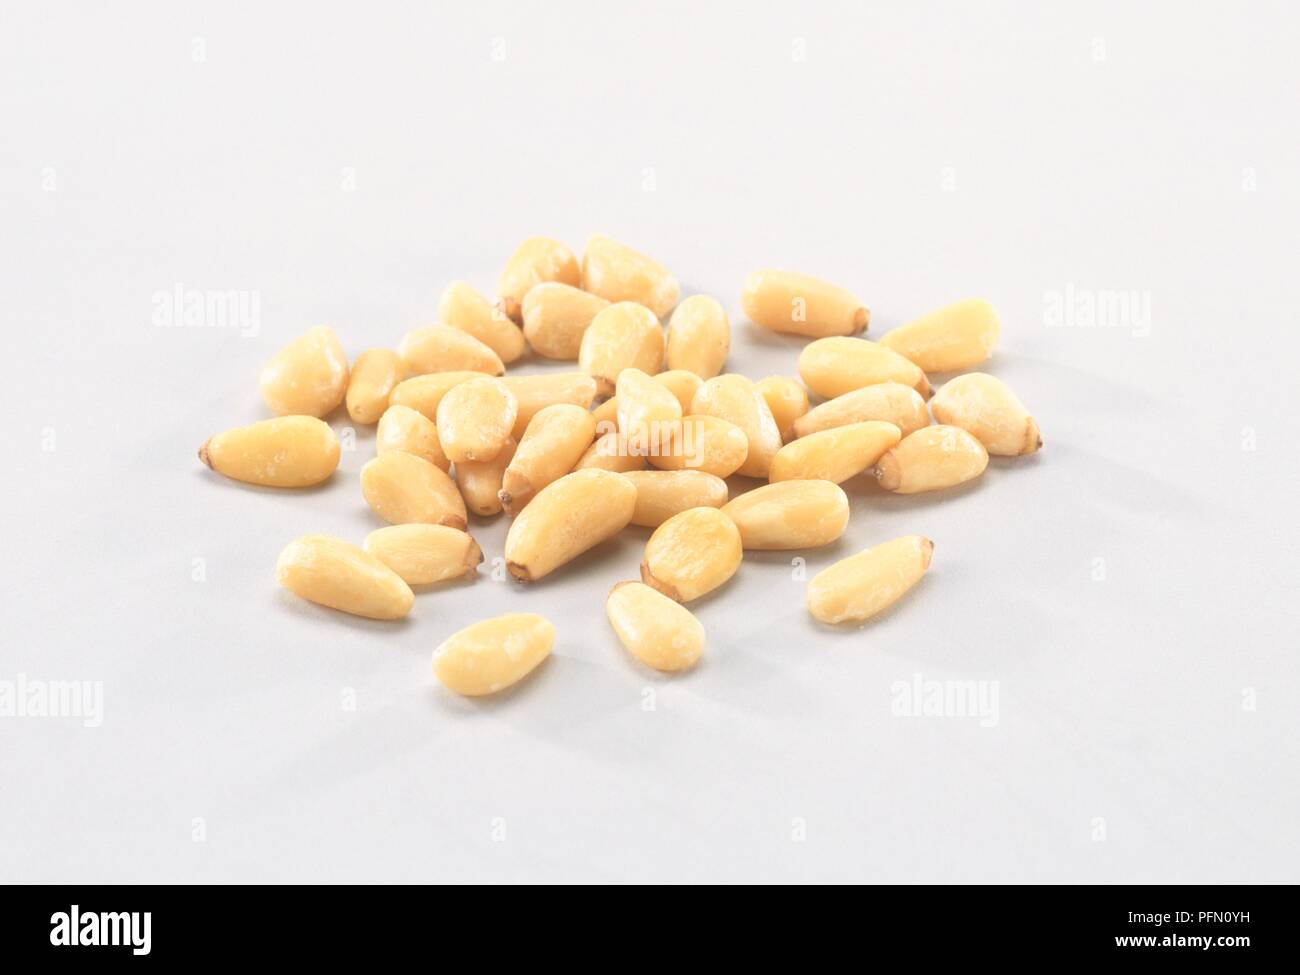 Korean Pine (Pinus koraiensis) pine nuts Stock Photo